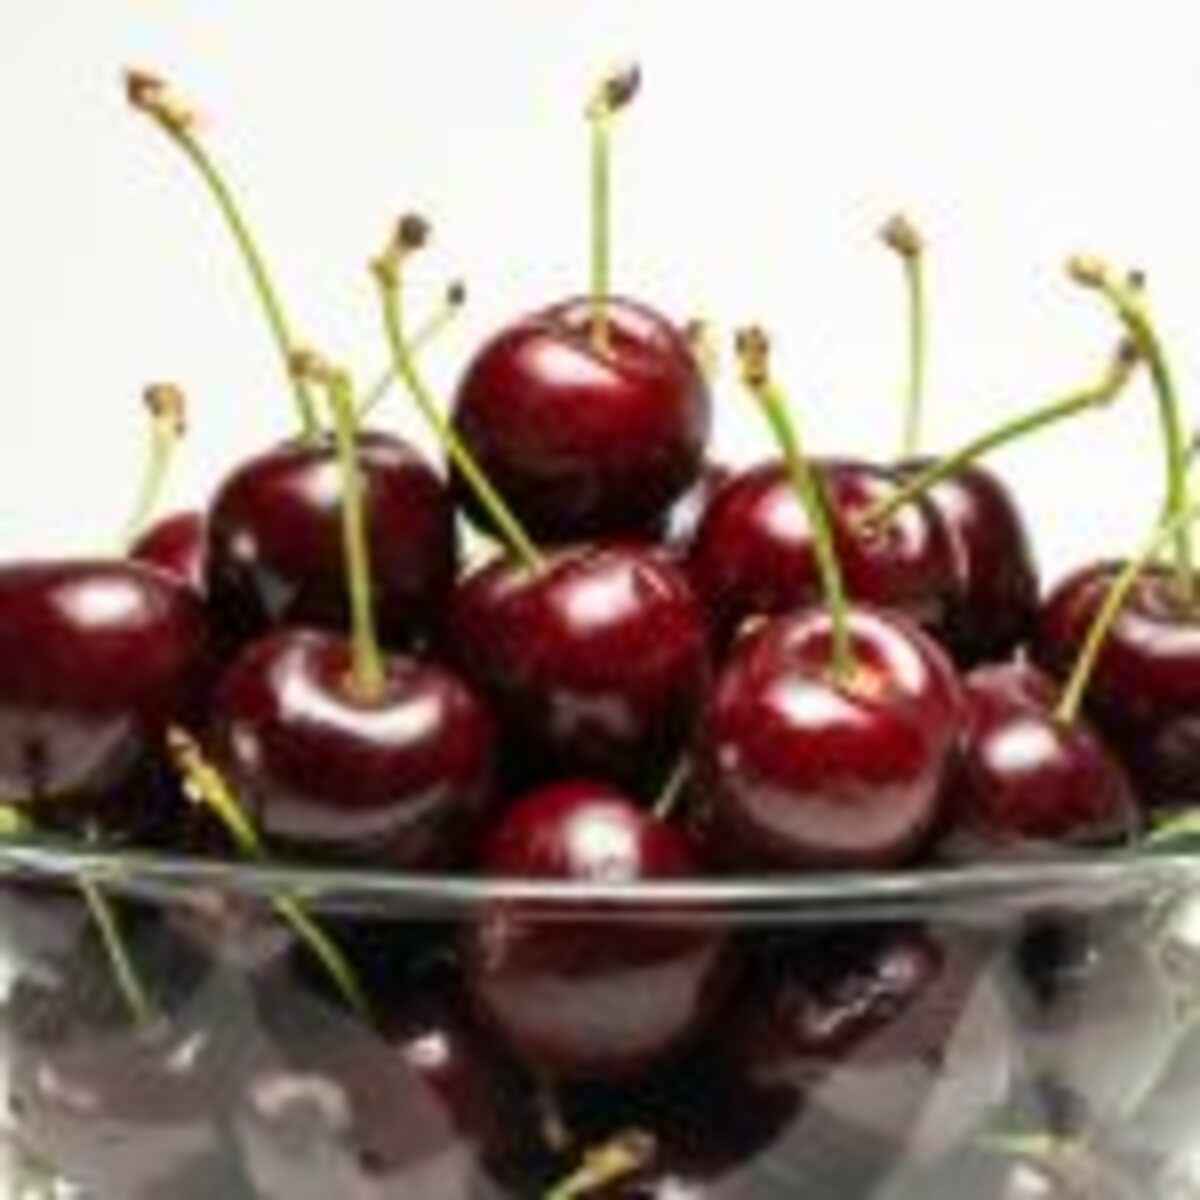 Cherries-WitheBackground-Sweet-Heart-1 (2)